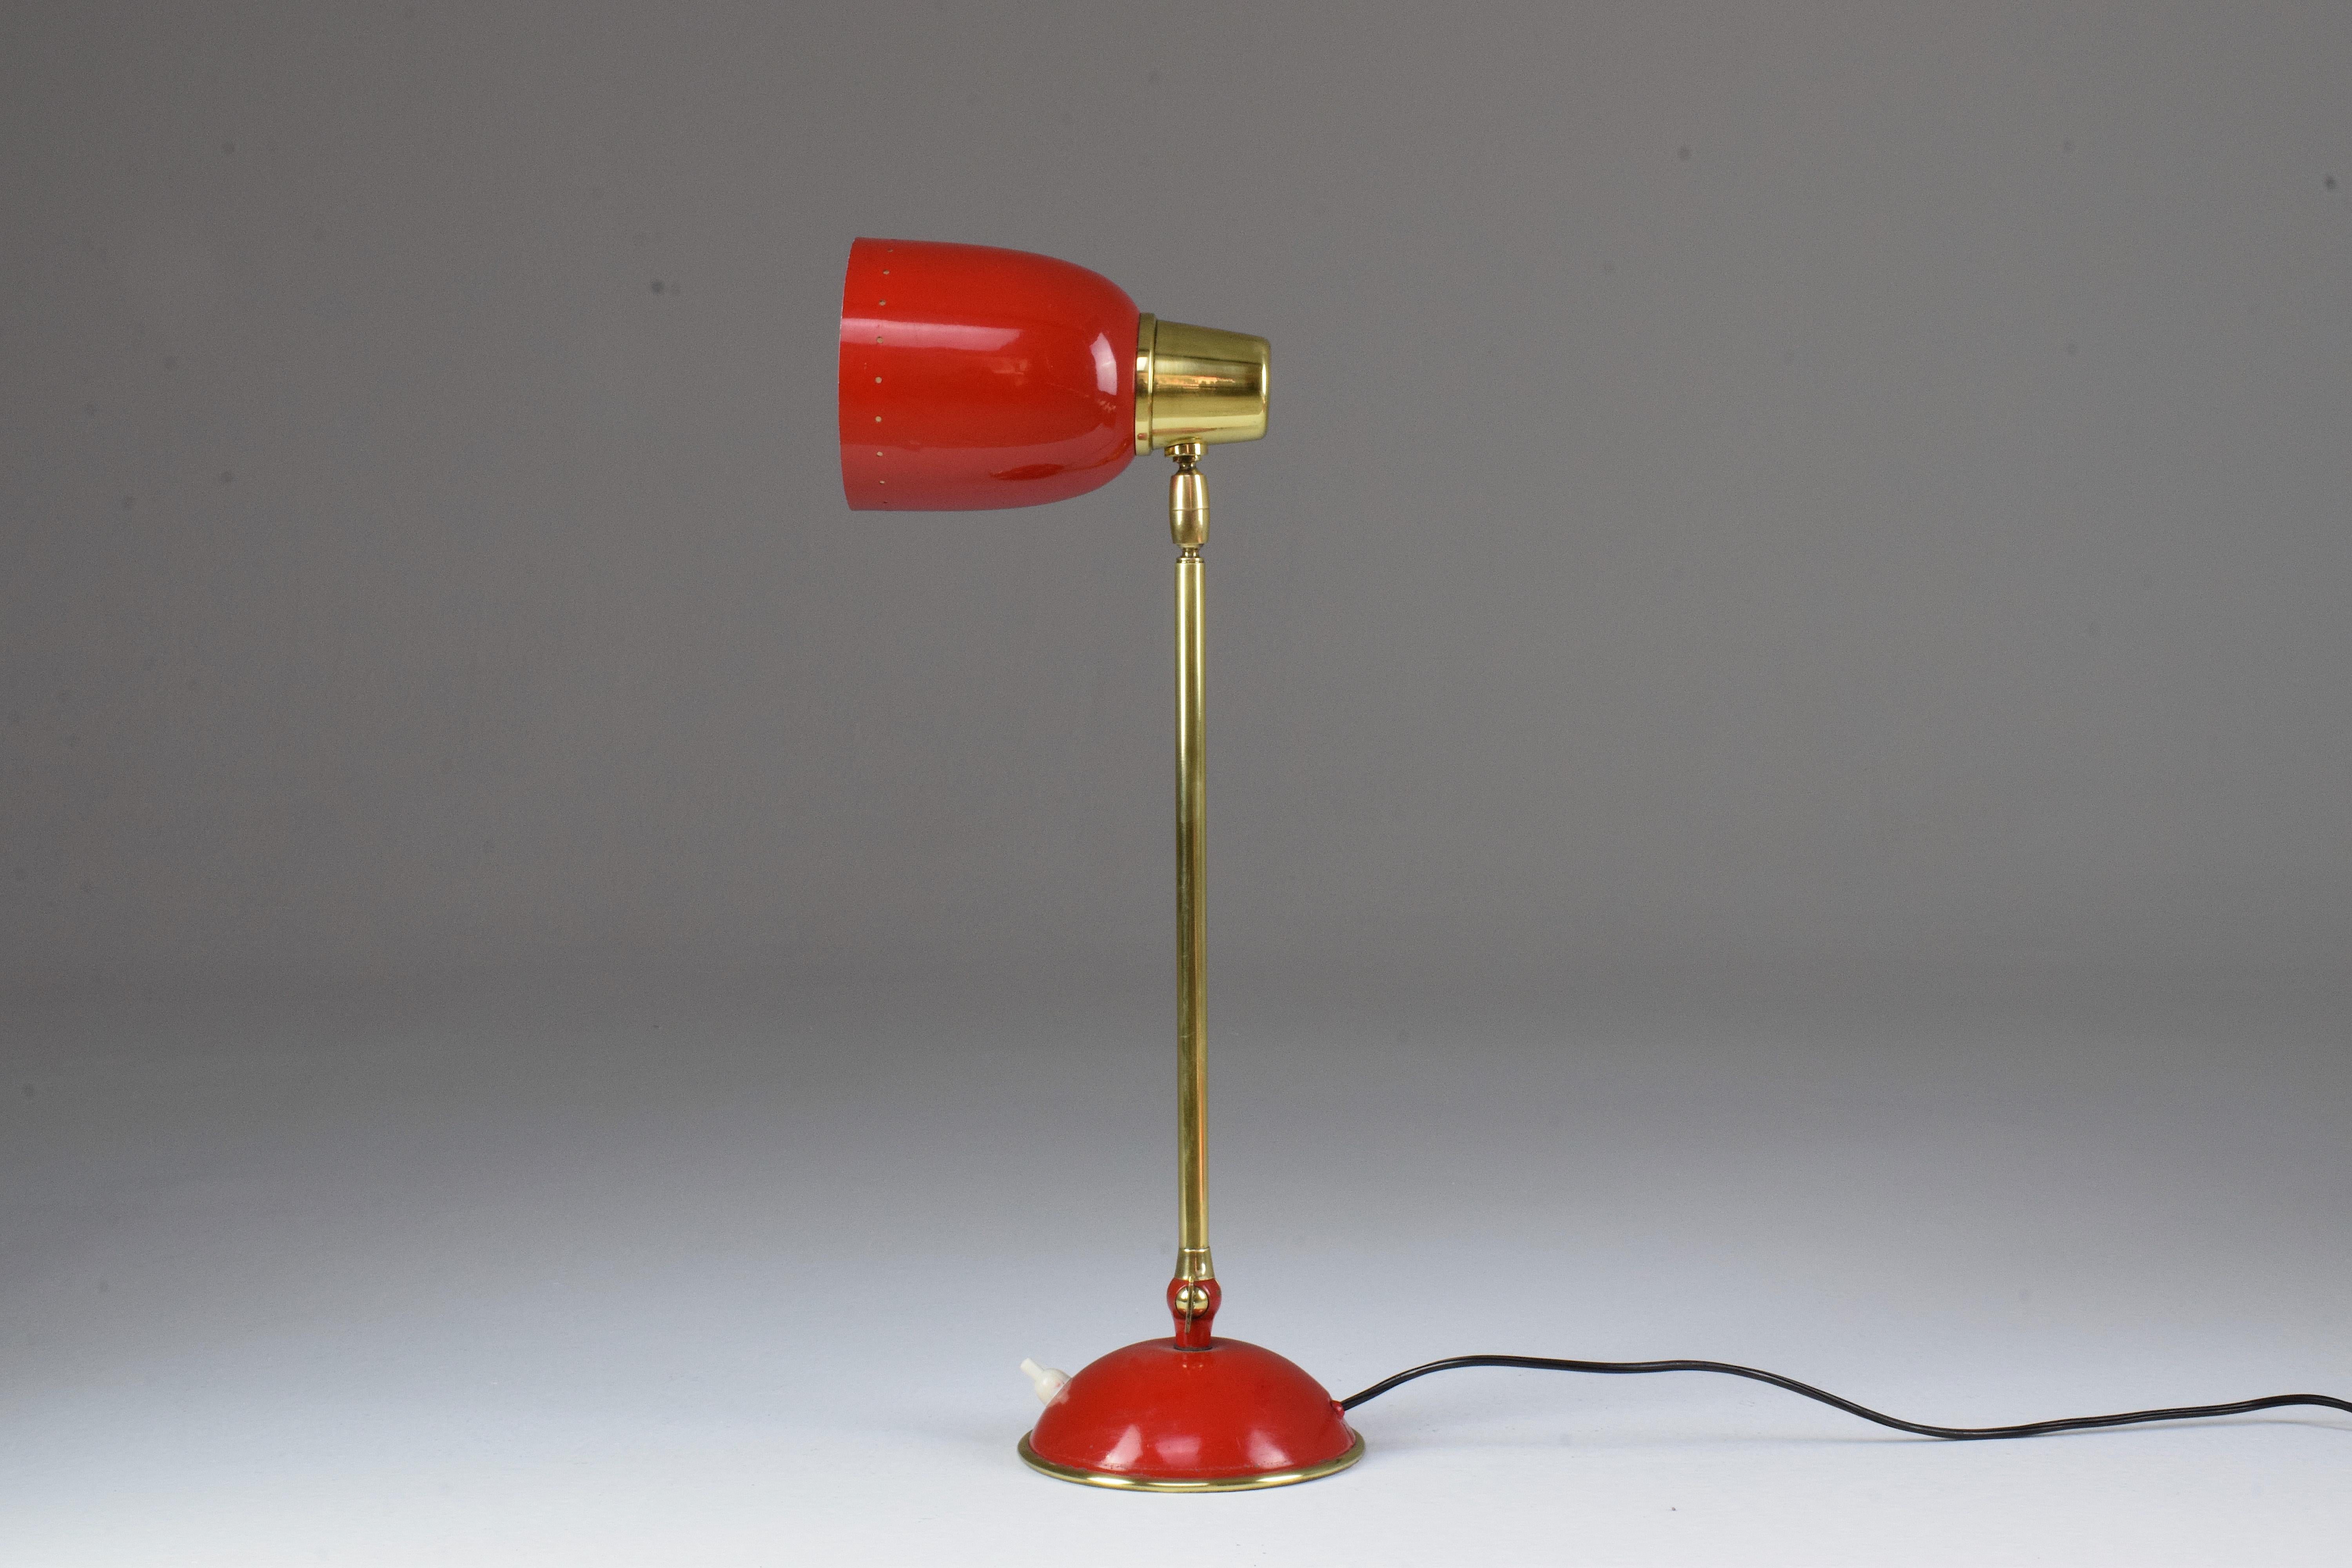 Eine schöne italienische Tisch- oder Schreibtischlampe aus dem 20. Jahrhundert aus rot lackiertem Stahl mit schicken Messingdetails. Diese Statement-Leuchte ist am Sockel und am Schirm artikuliert. Druckknopf-Lichtschalter am Sockel.
Nach dem